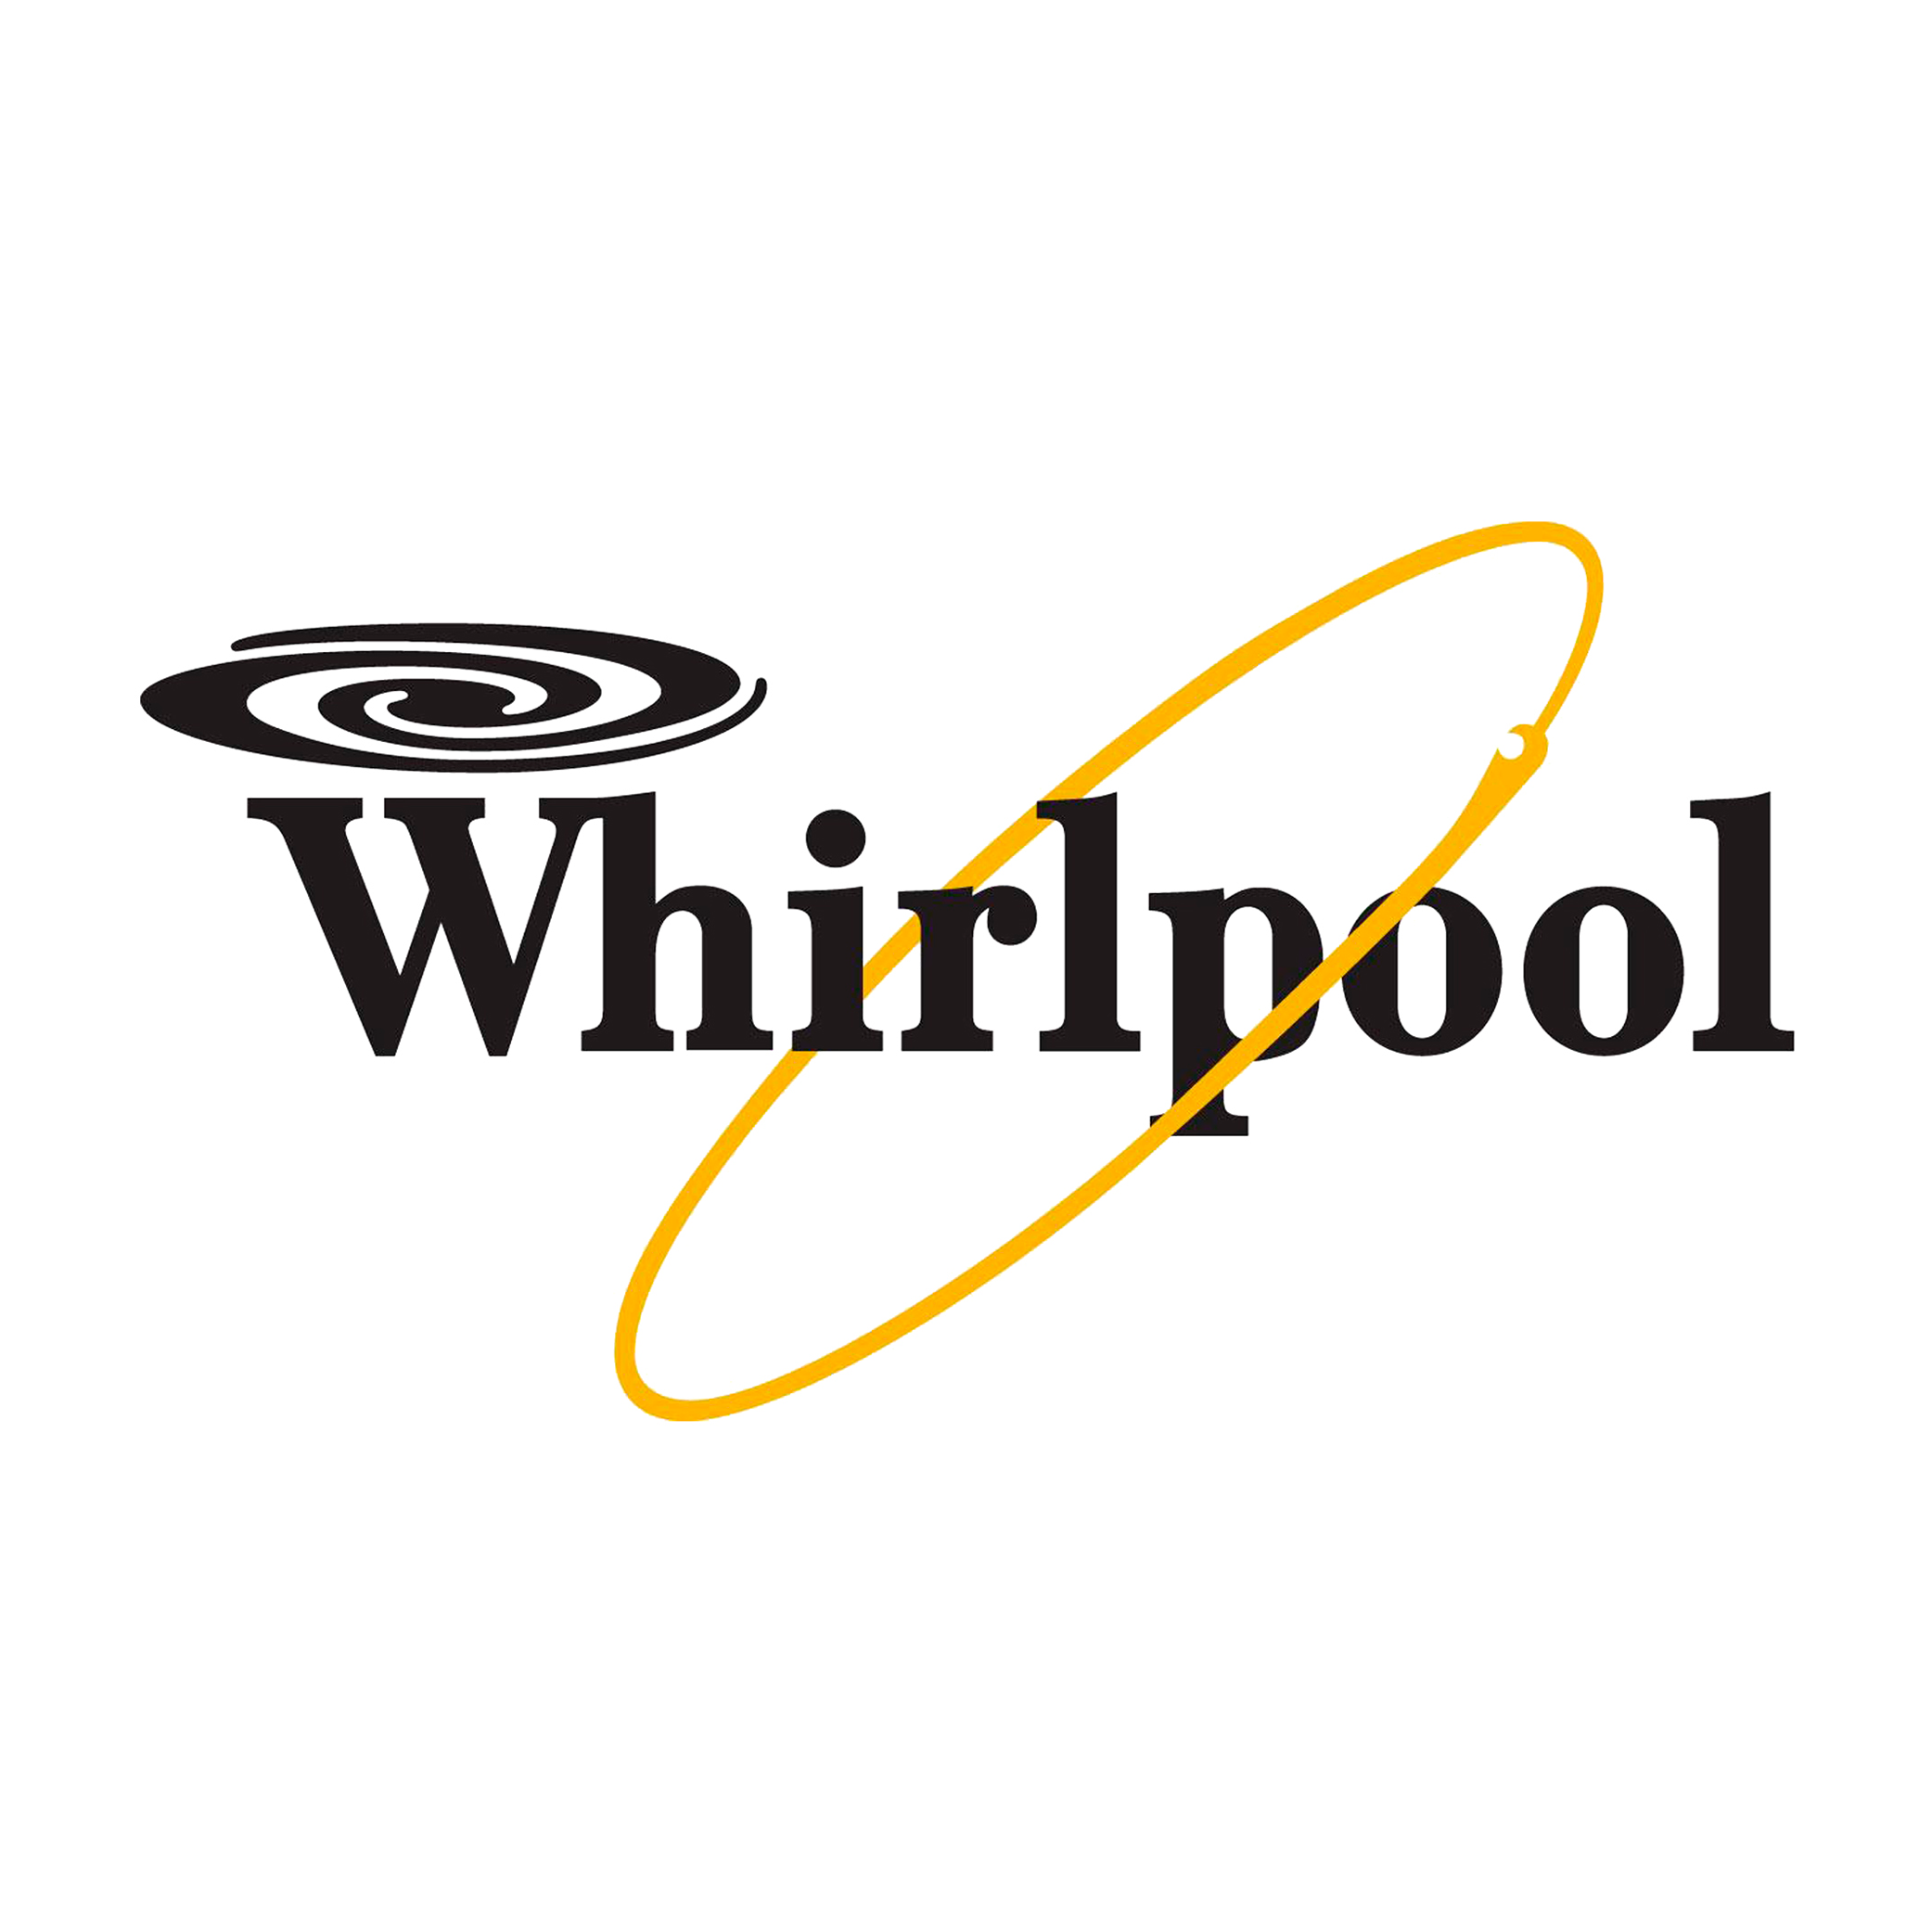 Whirpool à l'imprimerie du Potier dans le 93